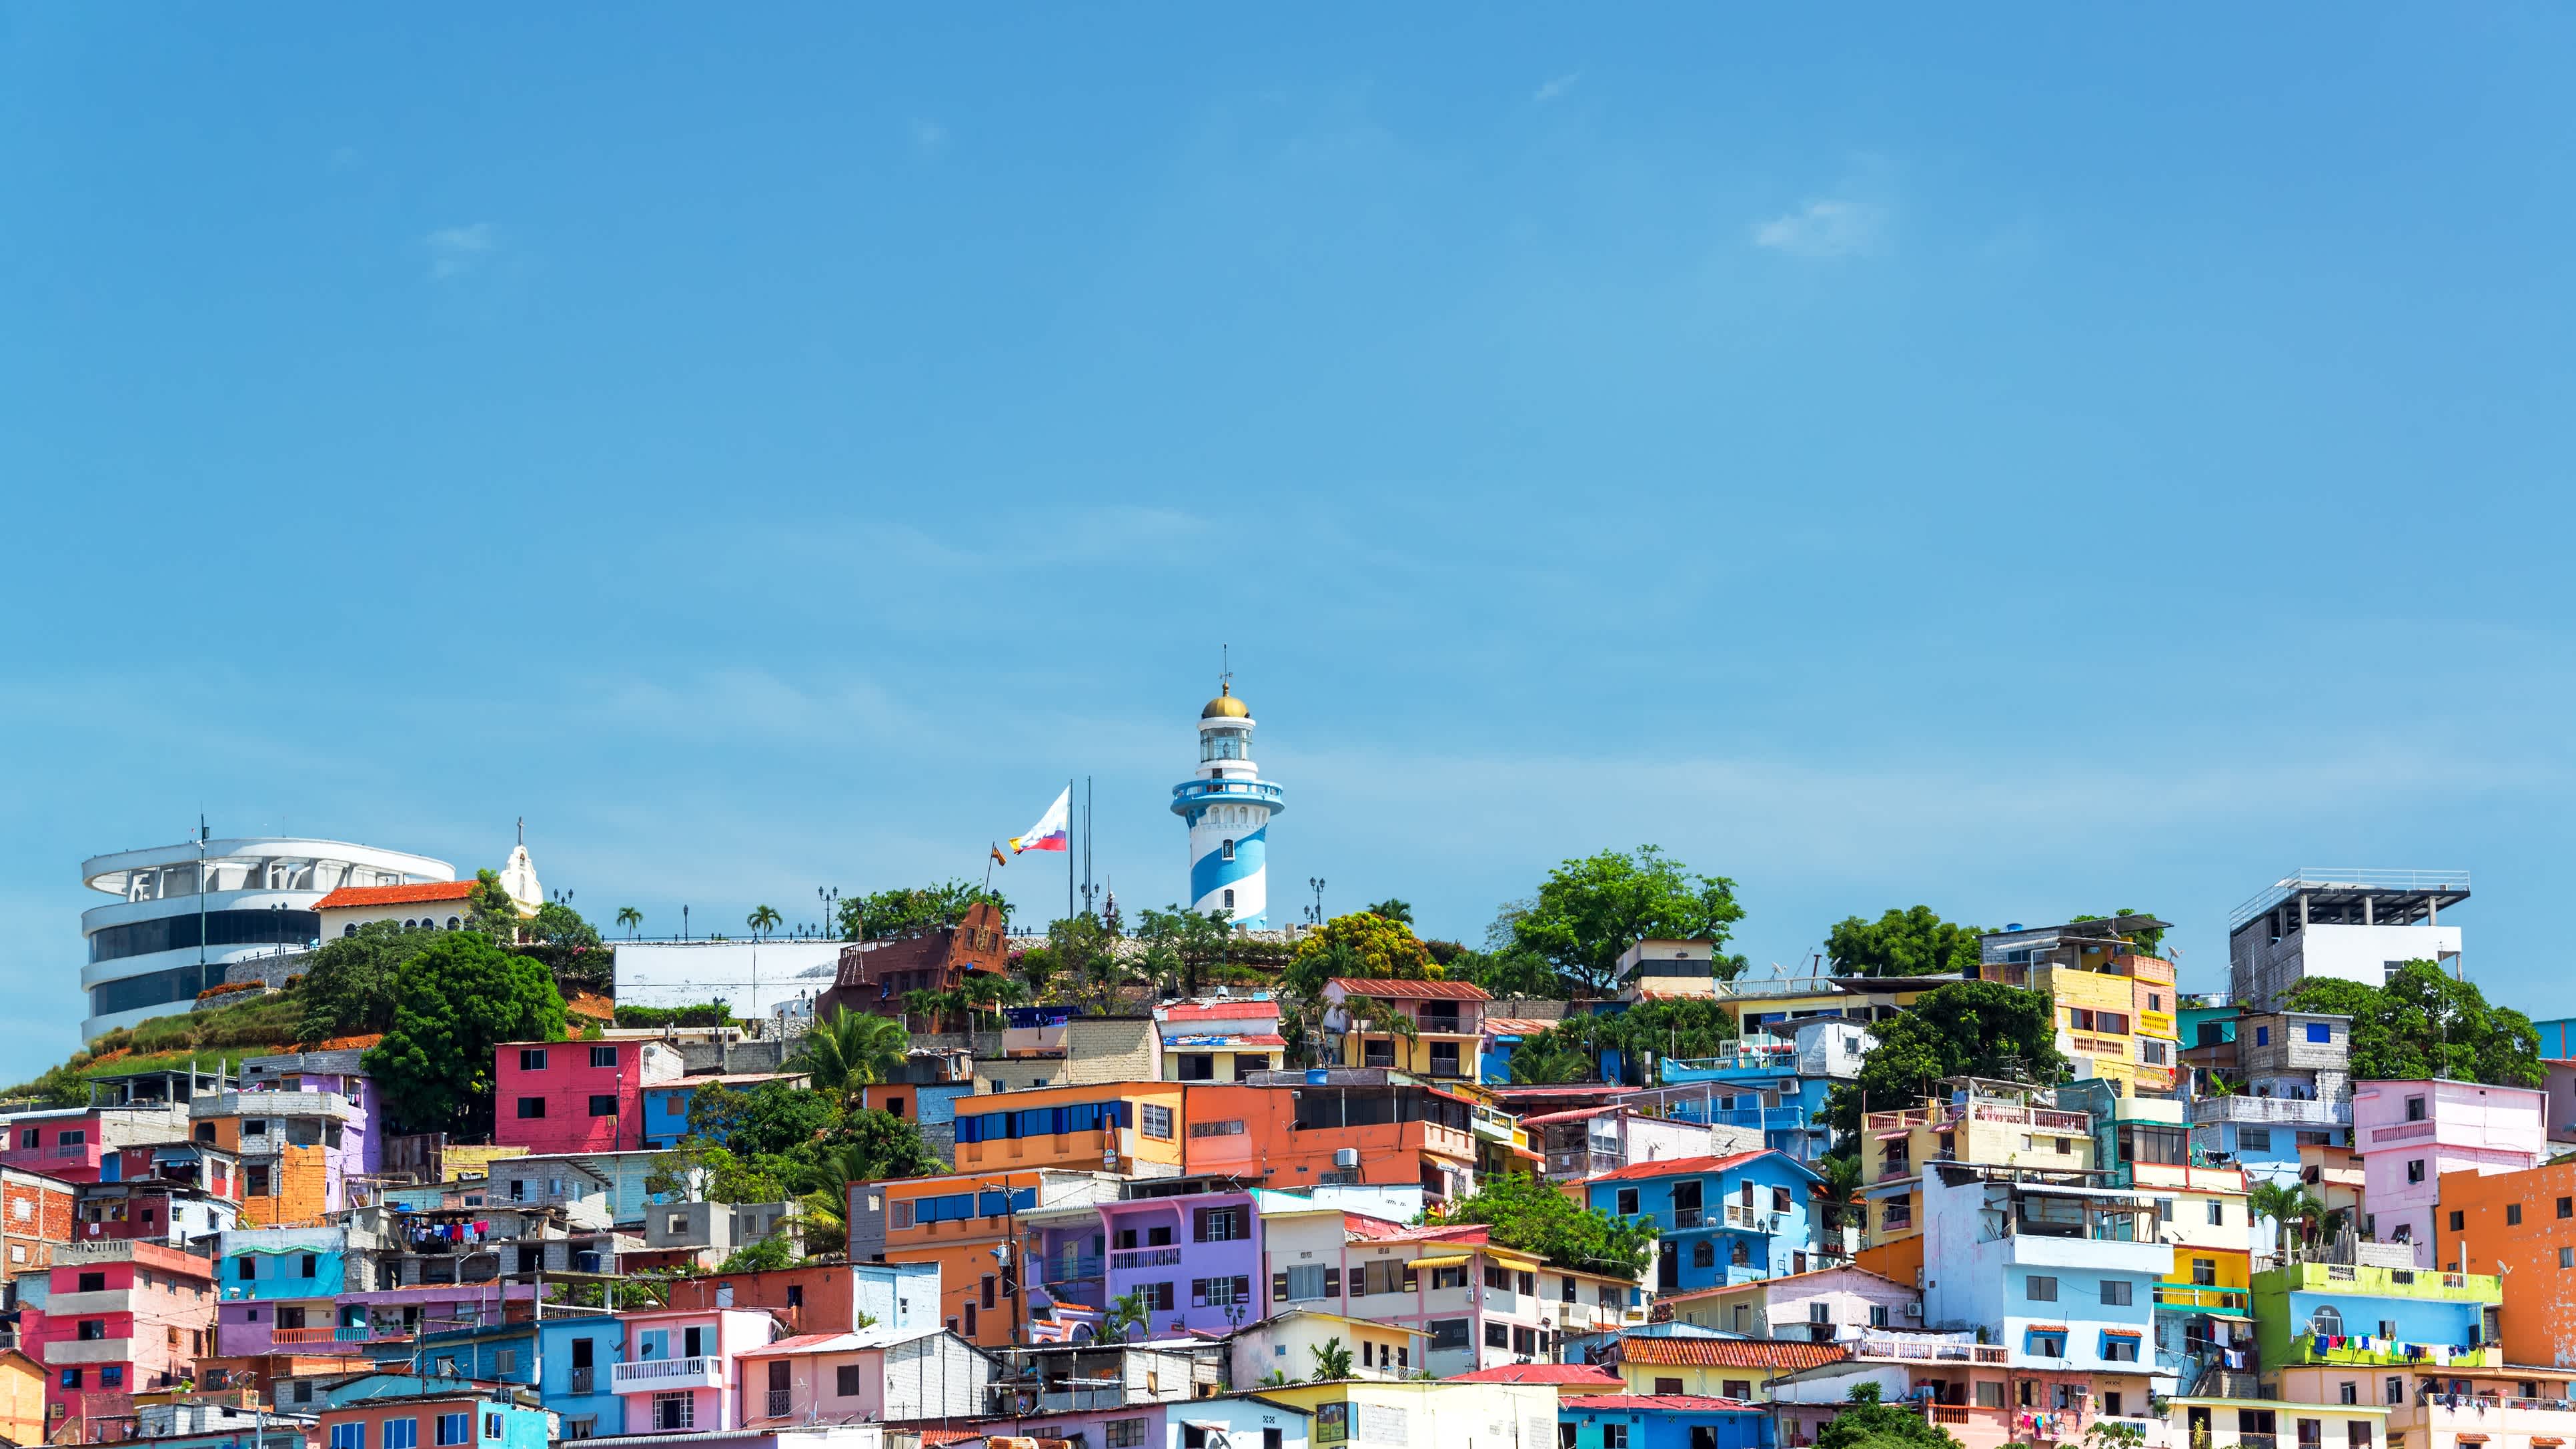 Der Santa Ana Hügel in Guayaquil Ecuador mit bunten Häusern